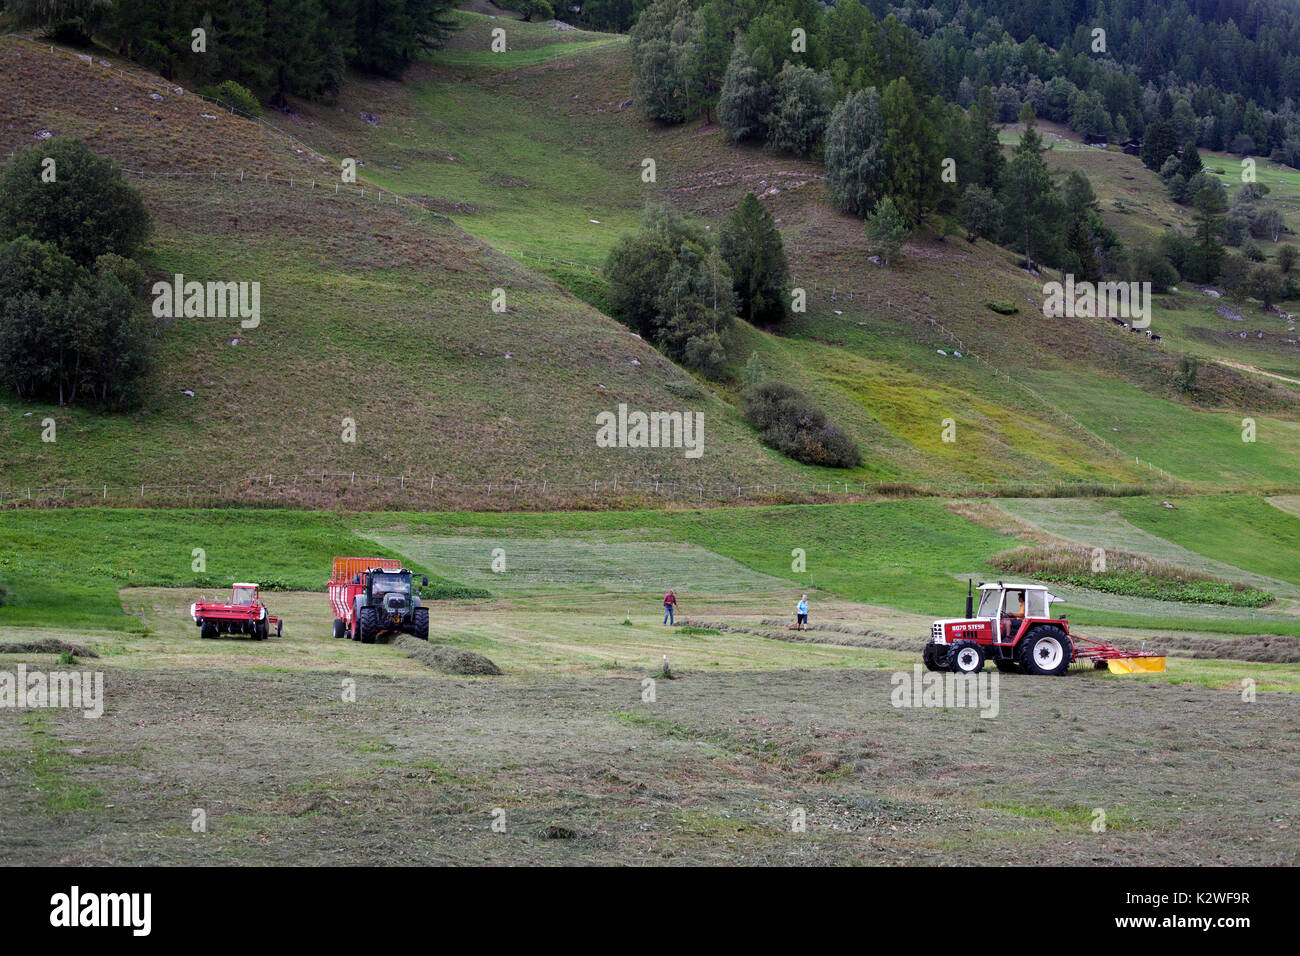 Making hay, Ulrichen, Switzerland. Stock Photo